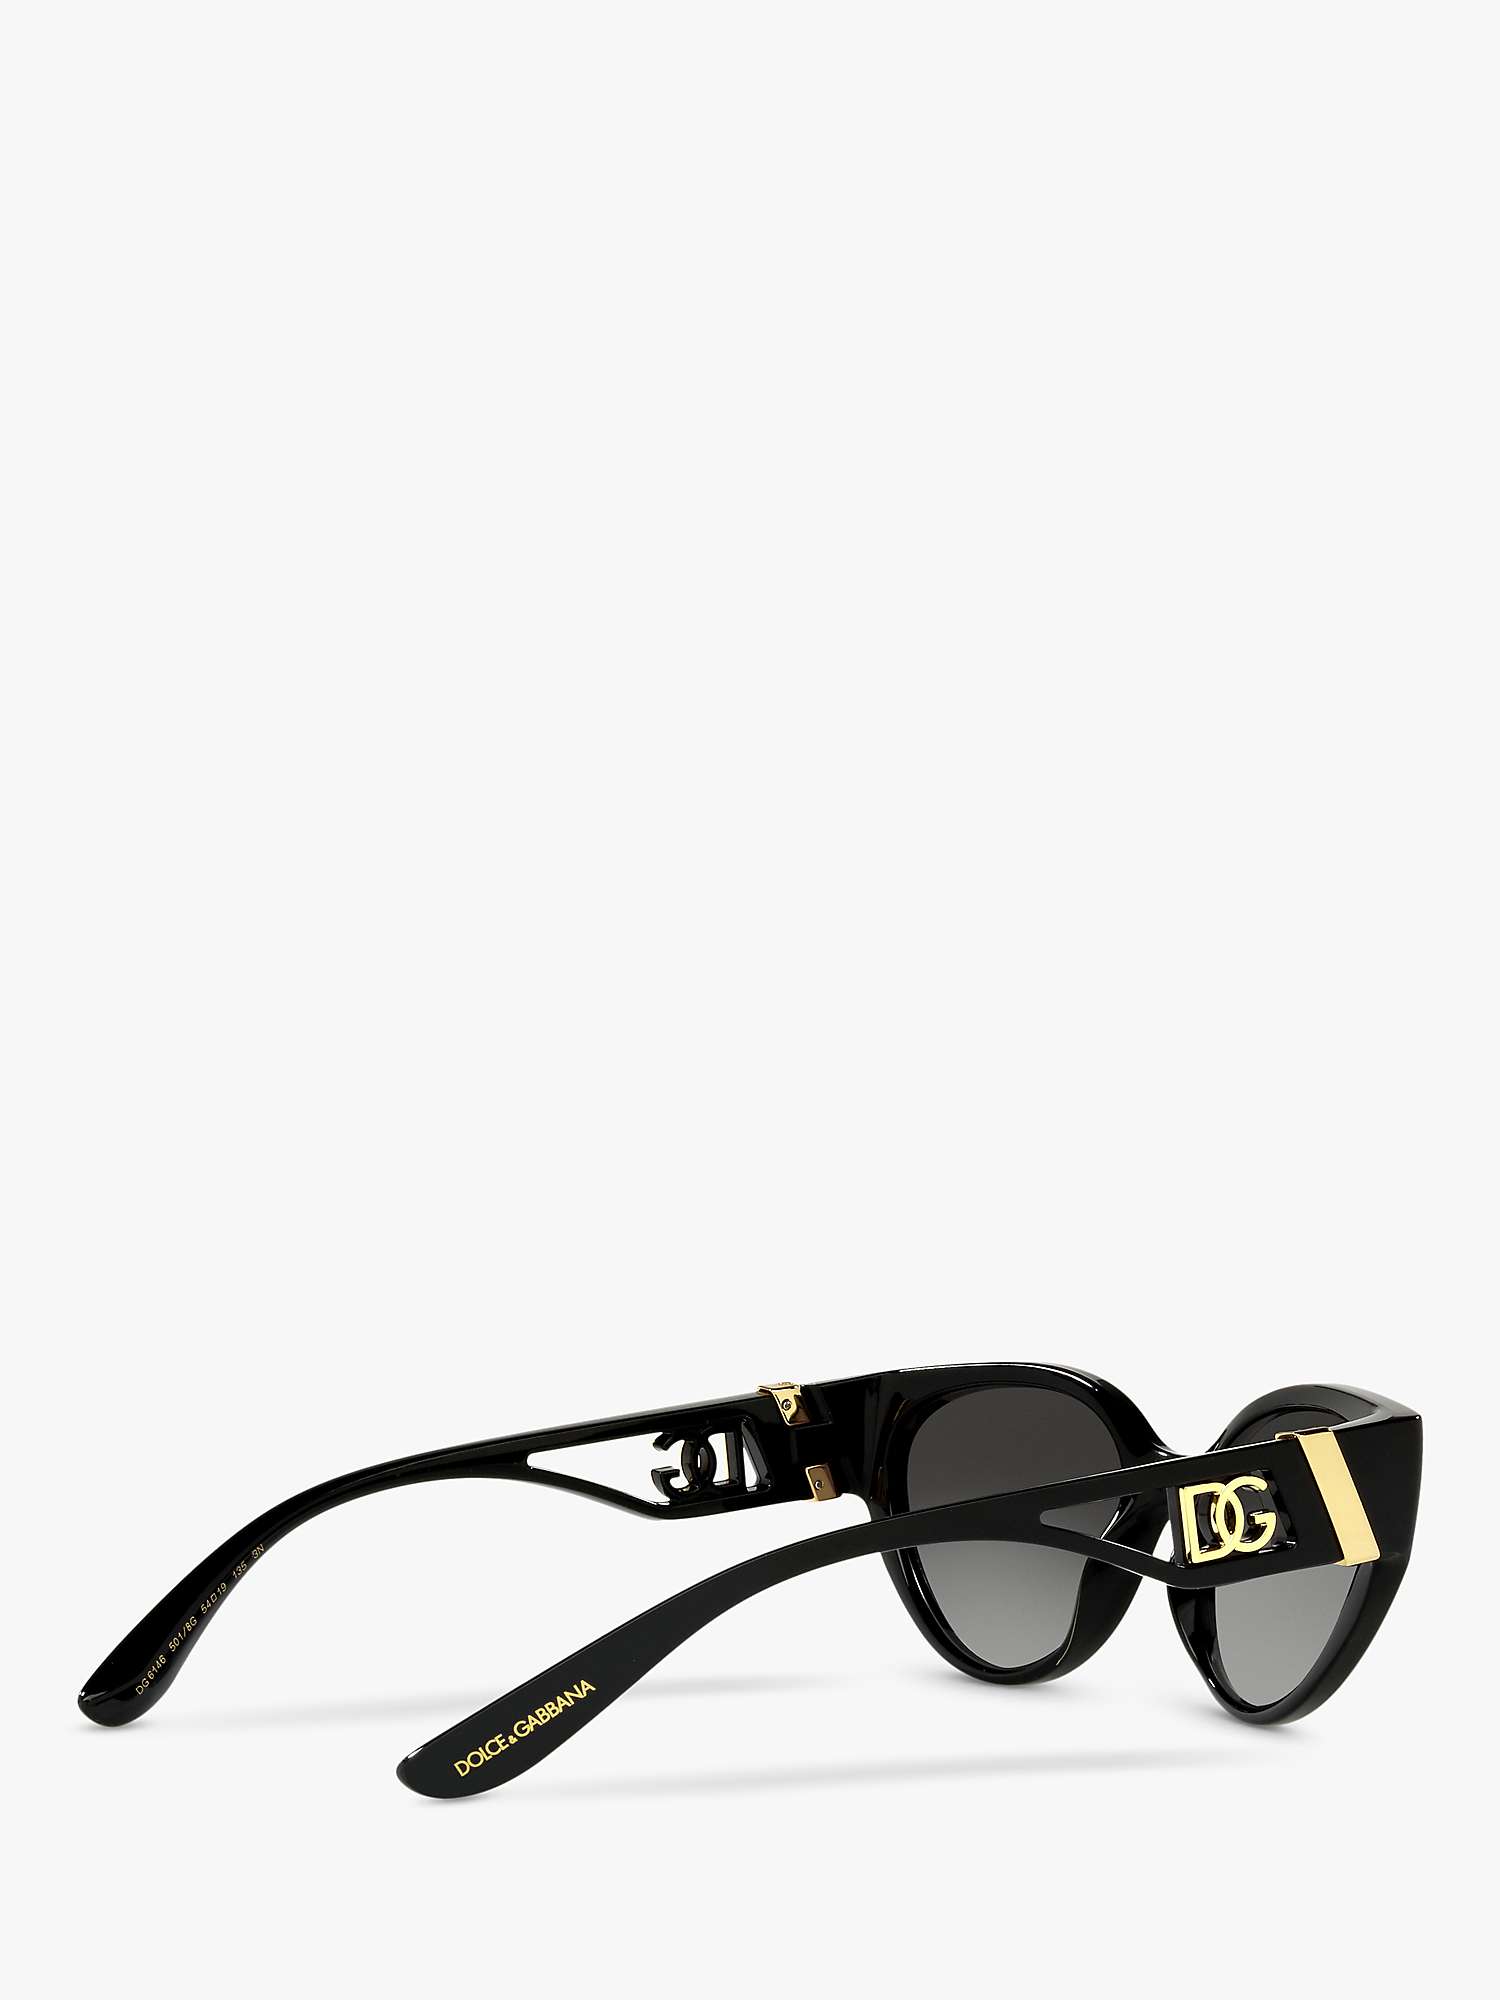 Buy Dolce & Gabbana DG6146 Women's Cat's Eye Sunglasses Online at johnlewis.com